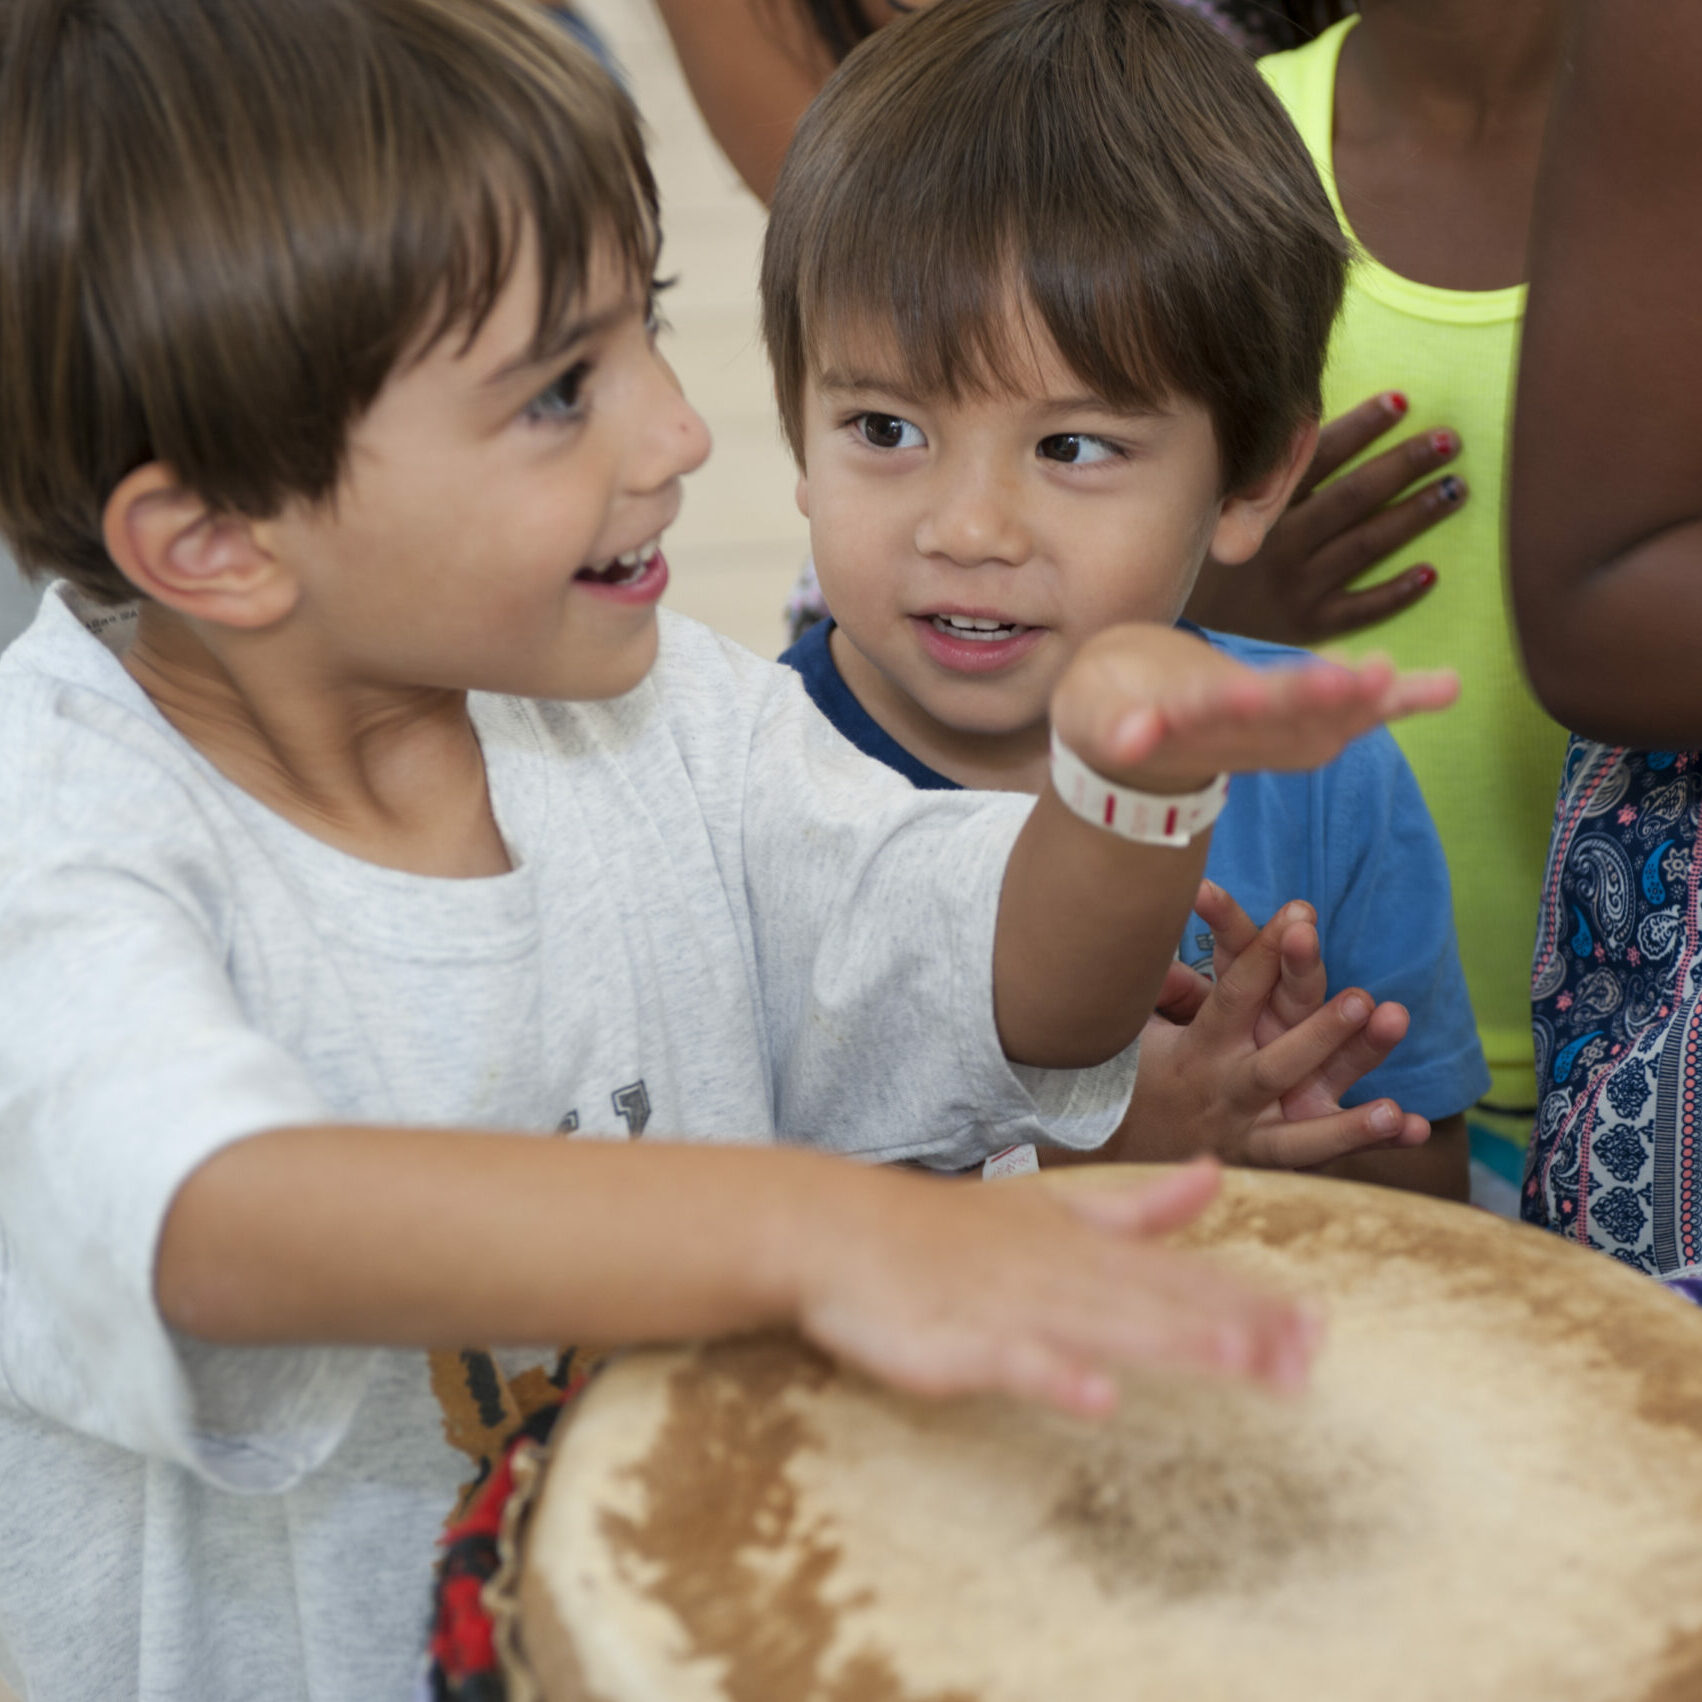 Children drumming